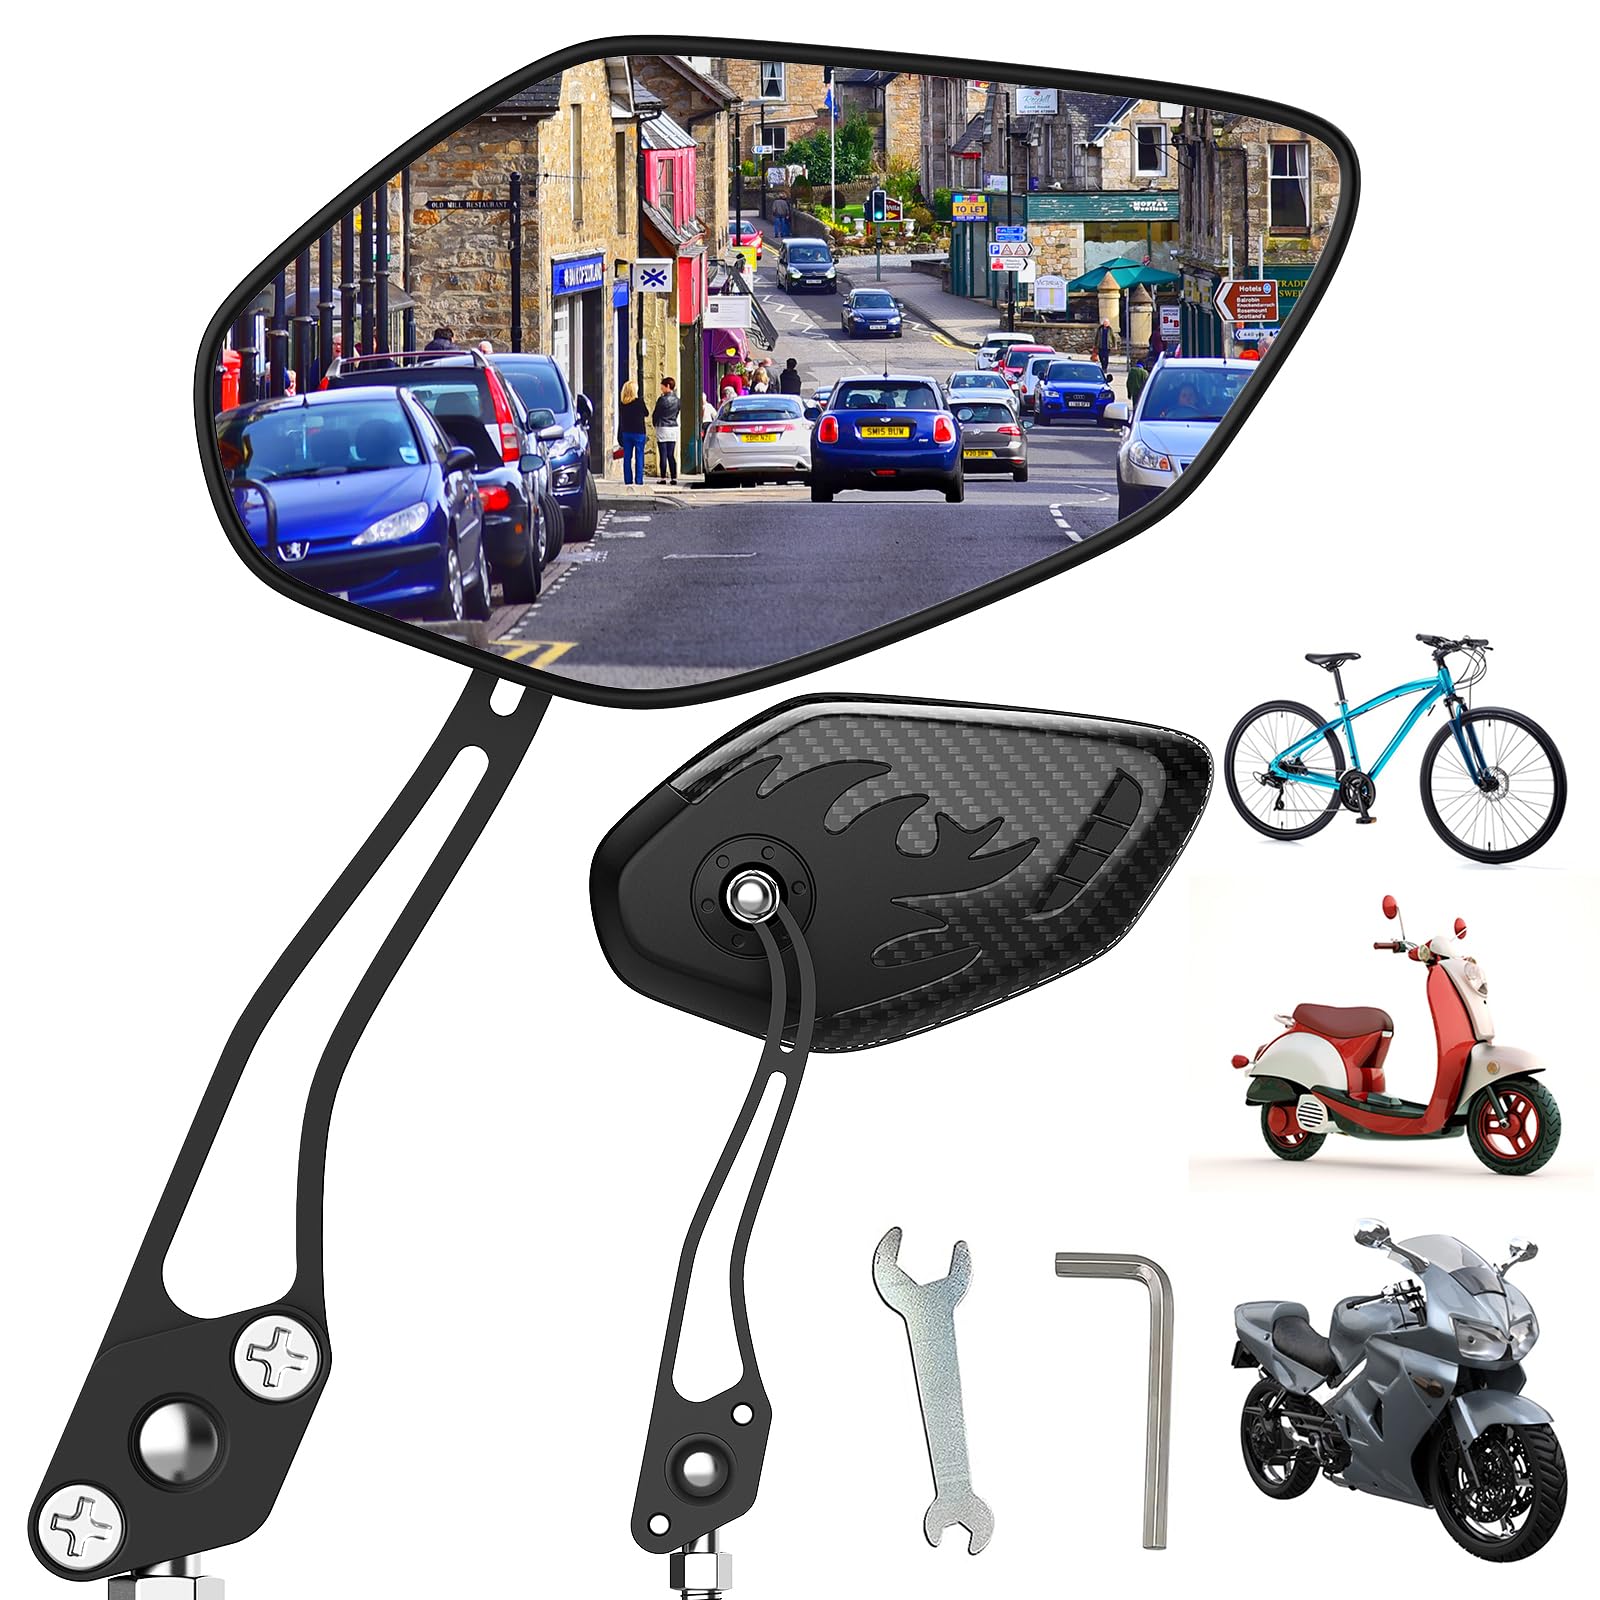 Fahrradspiegel (2er Set) 360° Metall Verstellbarer Hebel Elektrofahrradspiegel Lenker Elektrofahrrad Zubehör Geeignet für Elektroautos, Fahrräder, Motorräder von BHW